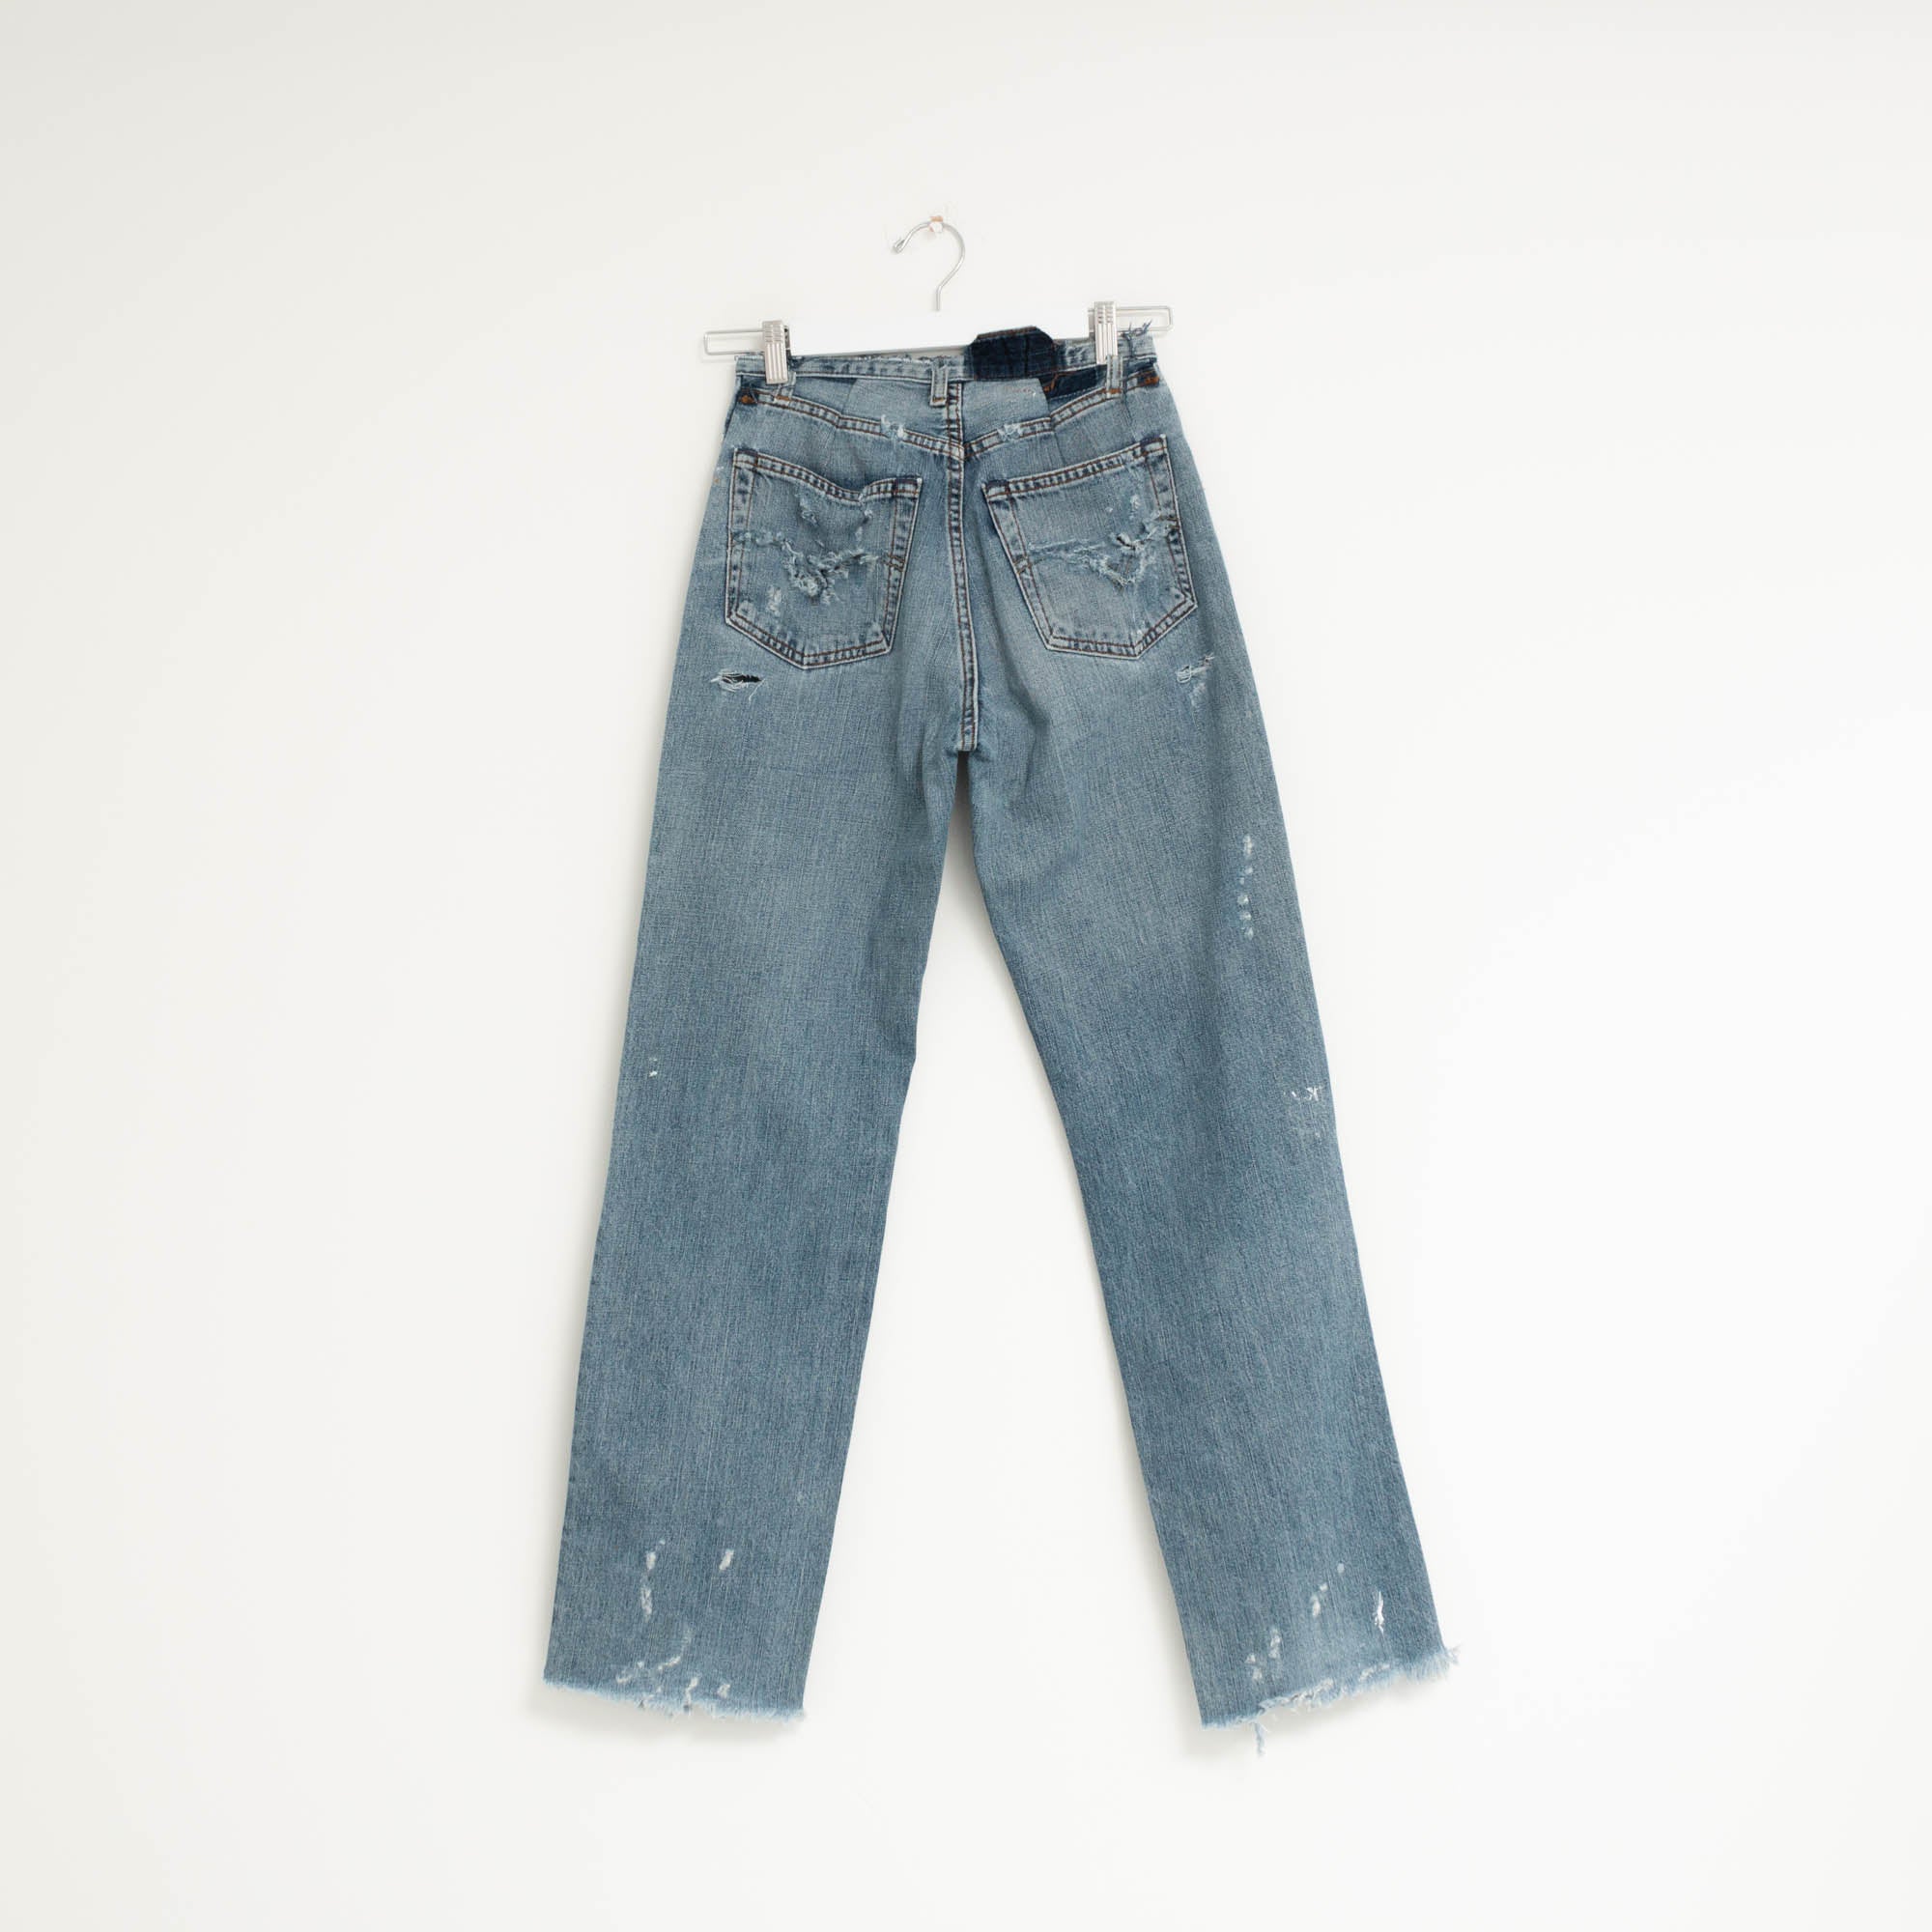 "PAINTER" Jeans W26 L31